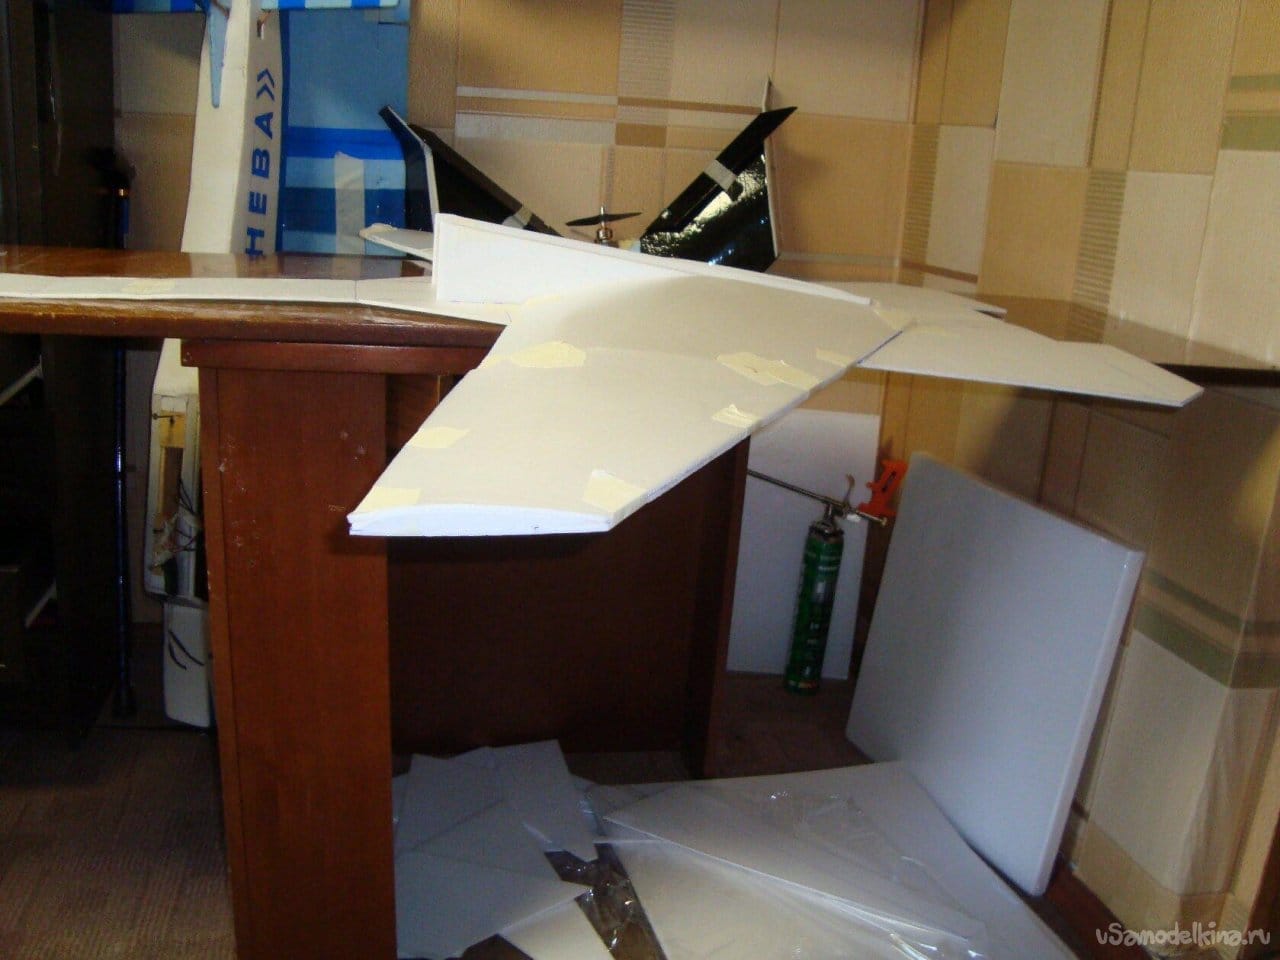 Экспериментальная авиамодель «Беркут» СВ – 180 с крылом обратной стреловидности